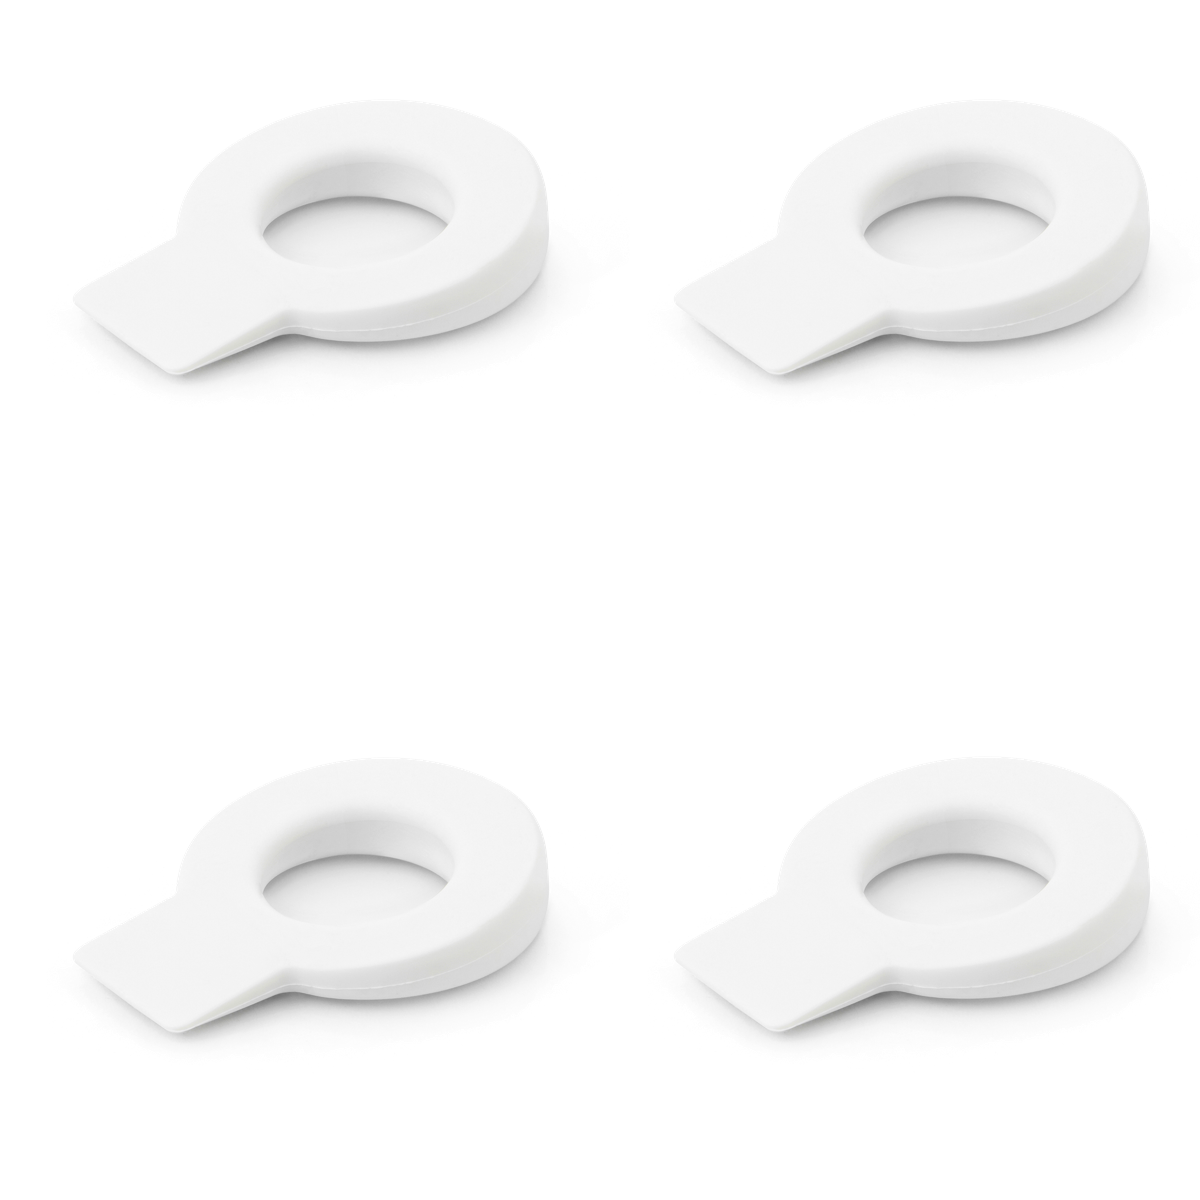 4 cuñas retenedores circulares de plástico flexible acabado en blanco para puertas